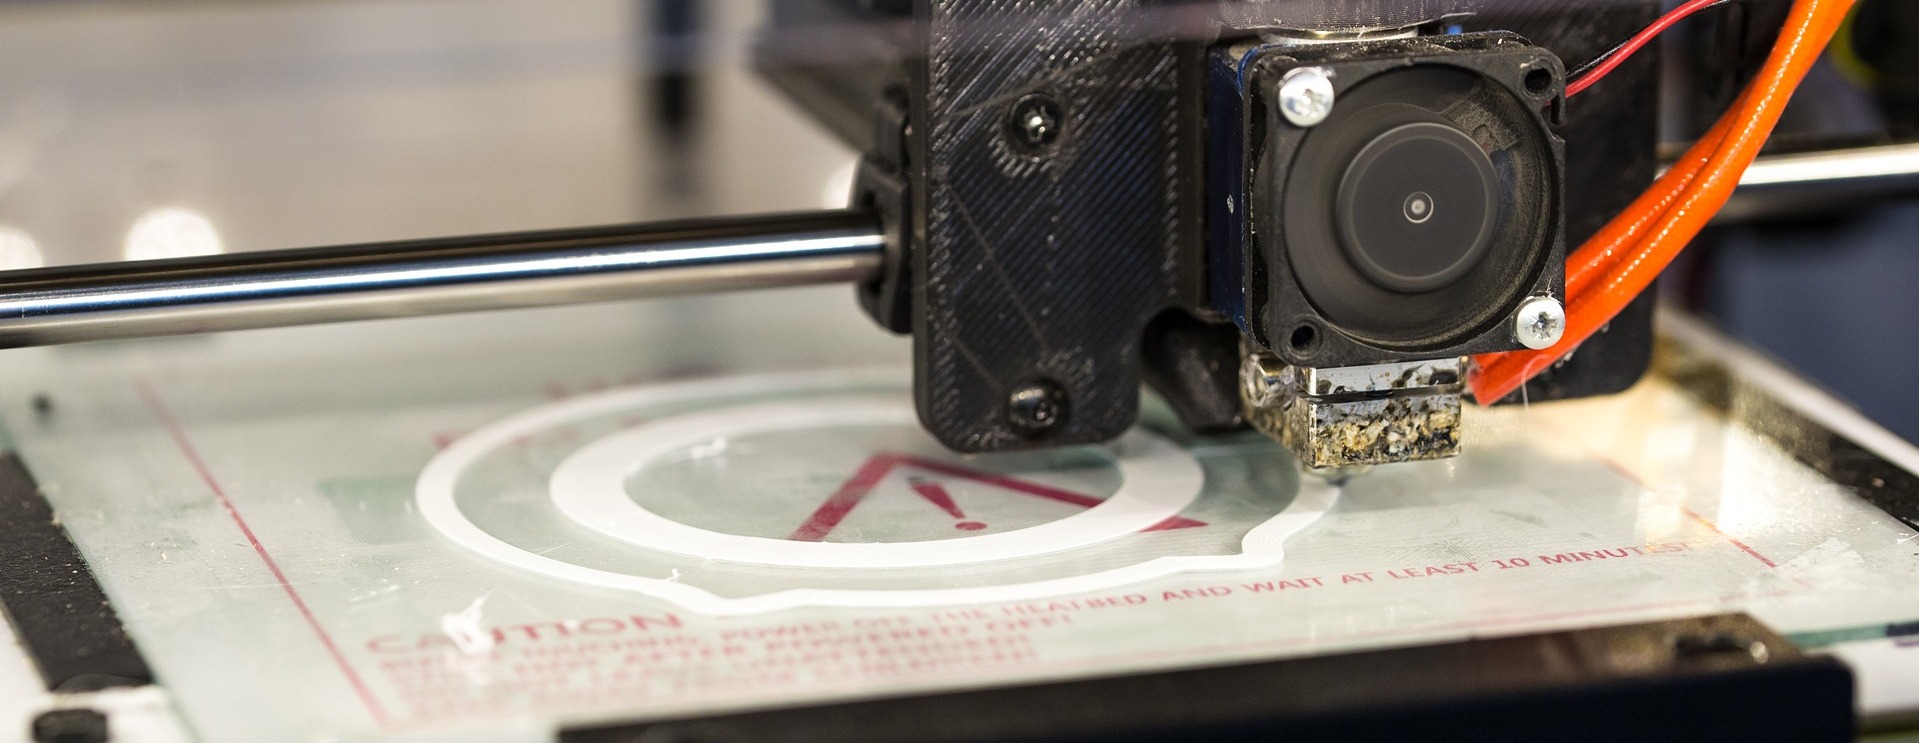 3D-принтеры московского производства поставляются на европейские рынки